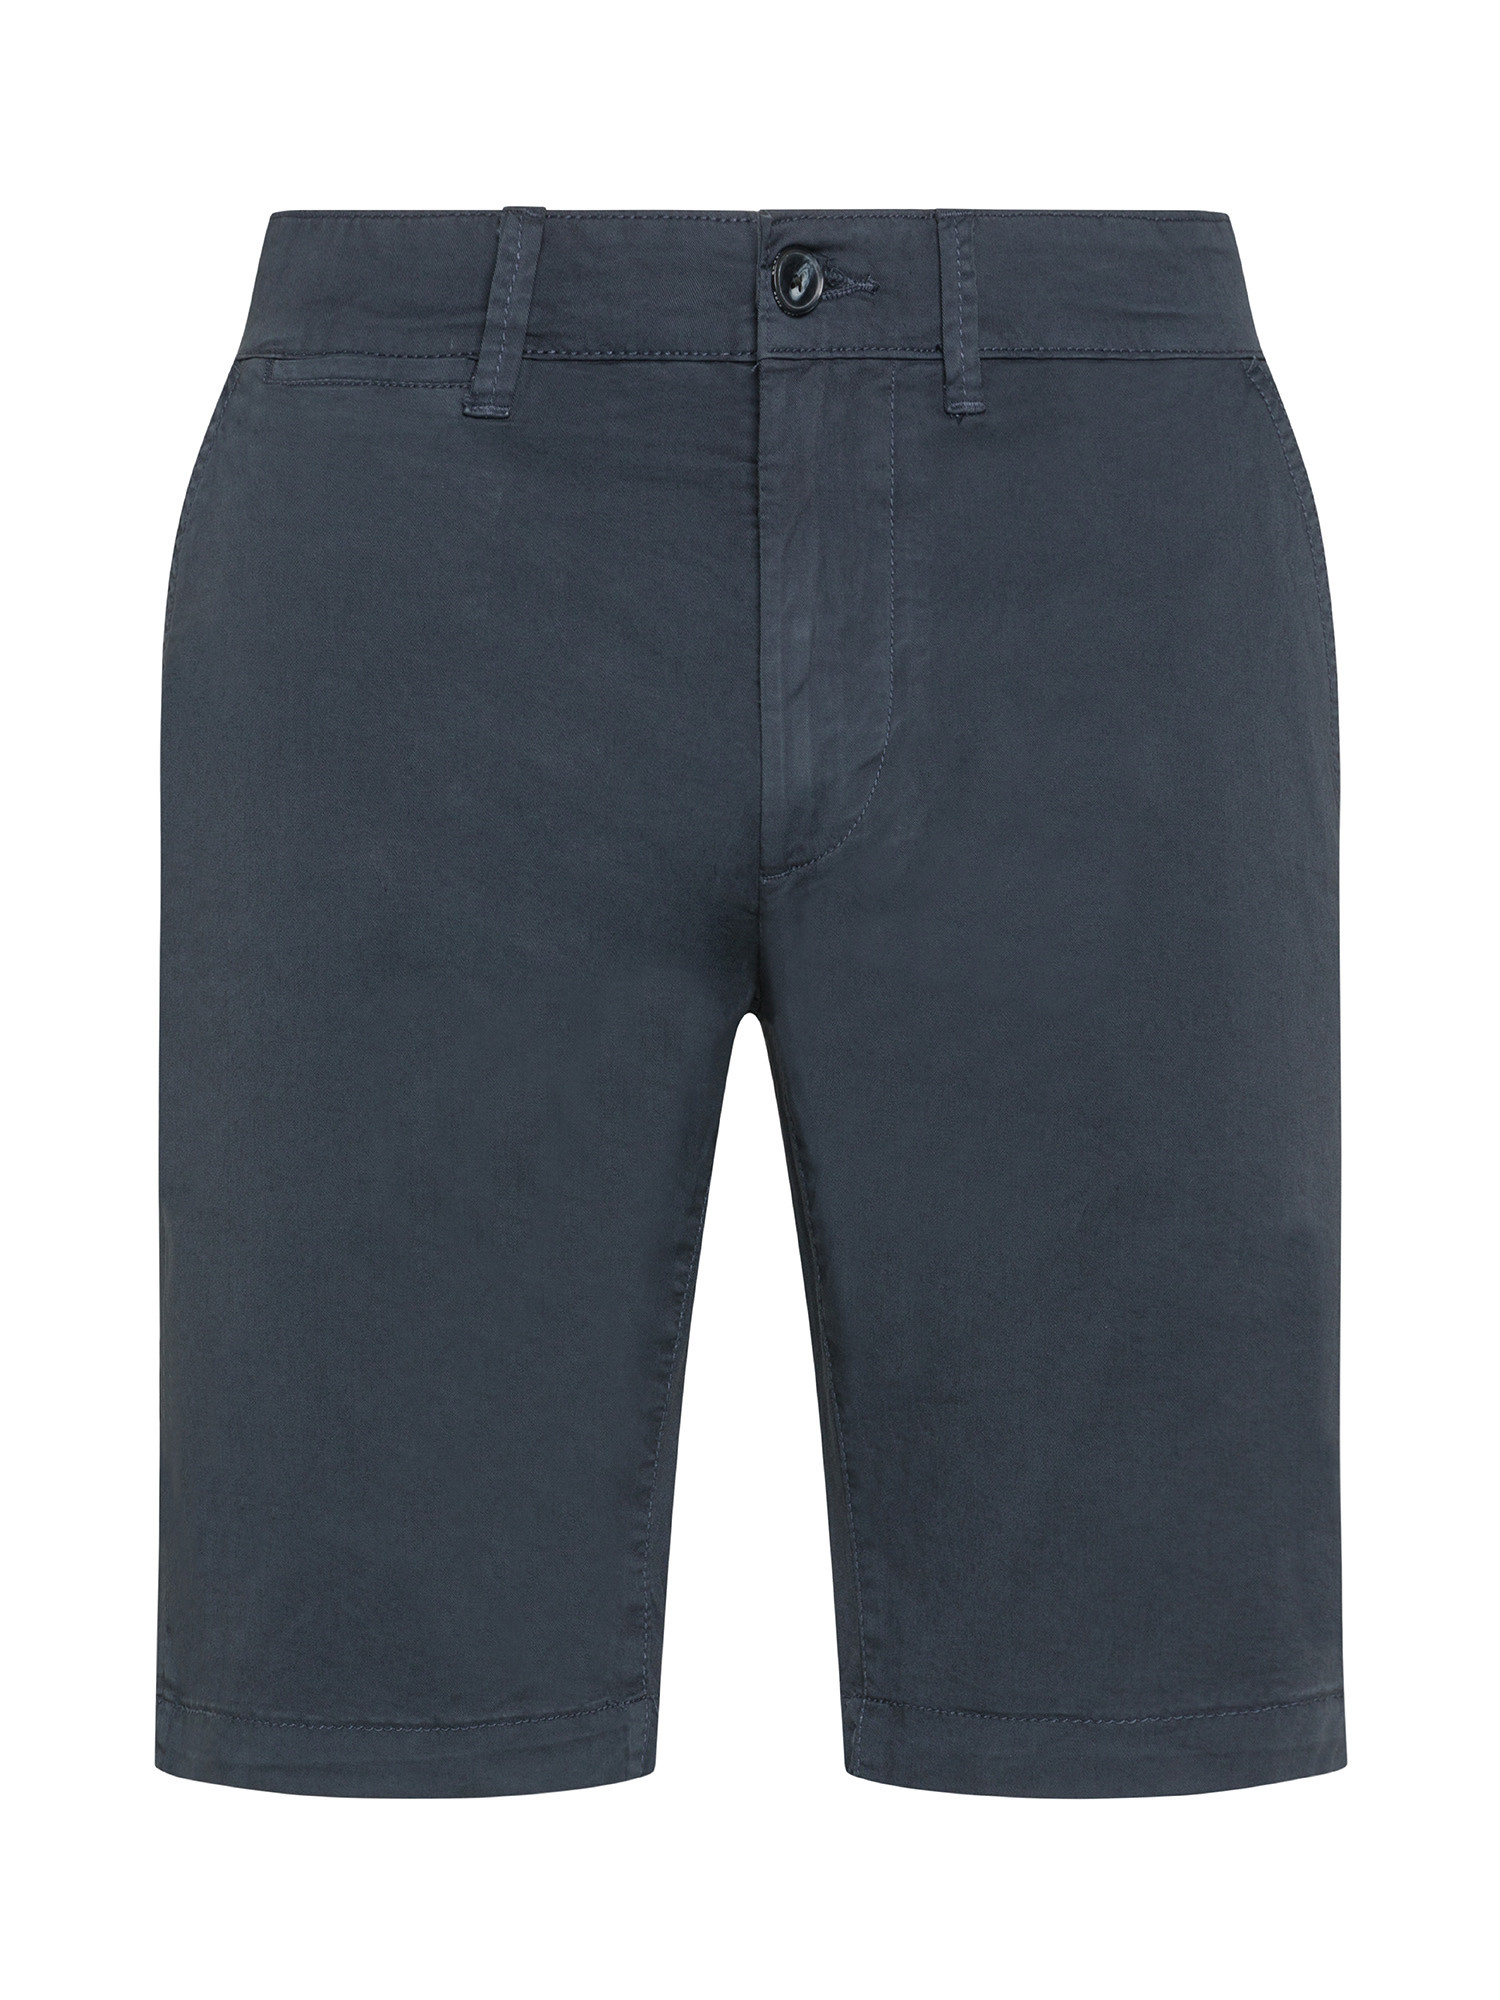 Pepe Jeans - Bermuda in cotone elasticizzato, Blu scuro, large image number 0